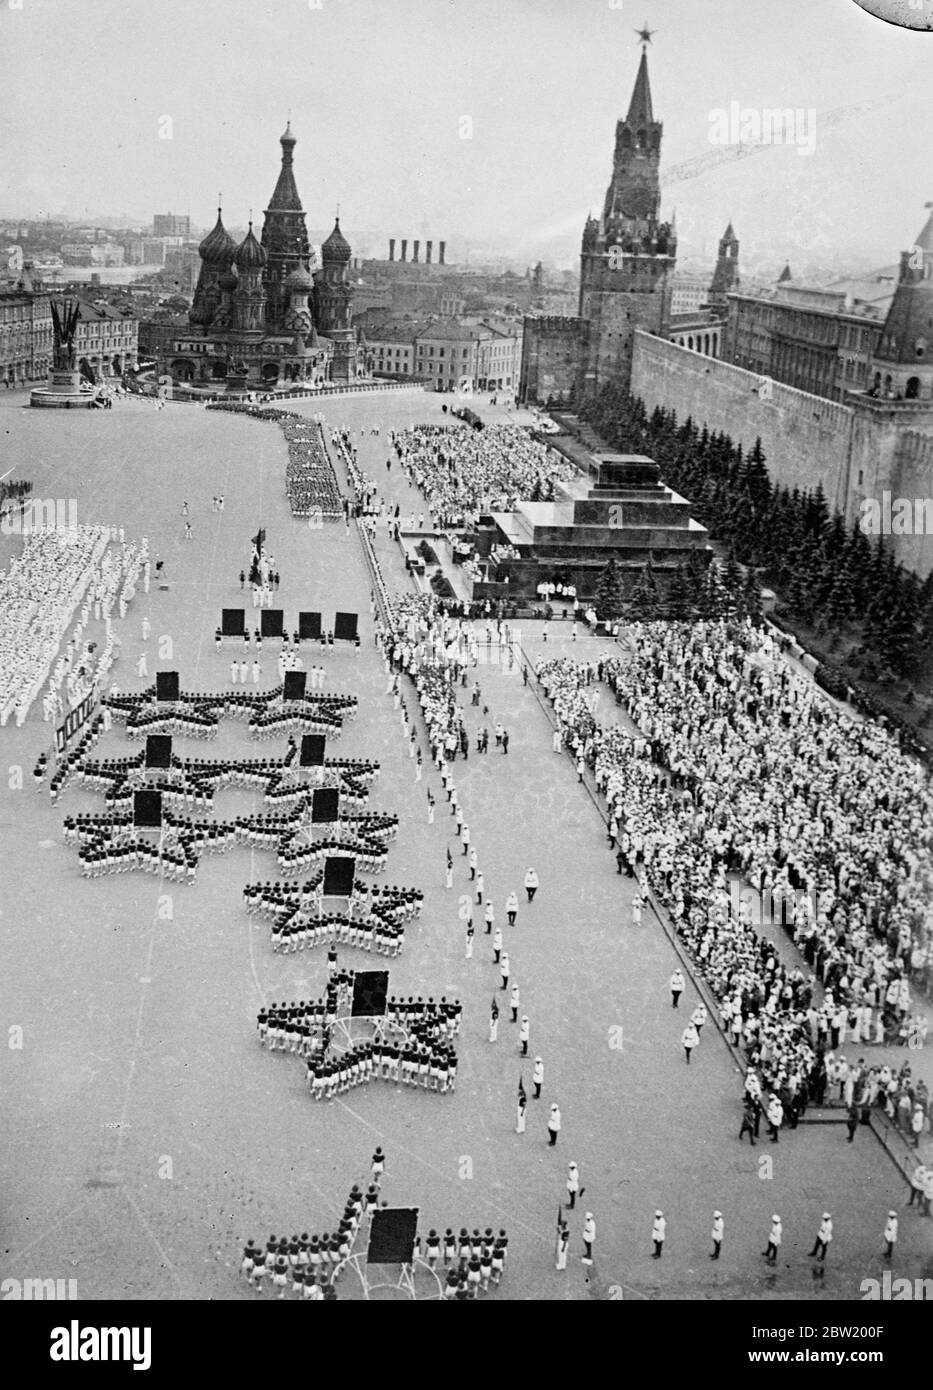 Sterne, die von Mitgliedern der Lokomotive-Sportgesellschaft gebildet wurden, die sich in Anwesenheit von Joseph Stalin und anderen Mitgliedern der Sowjetregierung über den Roten Platz bewegten. 40,000 Athleten aus 11 Republiken marschierten triumphierend über den Roten Platz in einer großen Ausstellung, um den 20. Jahrestag der Revolution zu feiern. 18 Juli 1937. Stockfoto